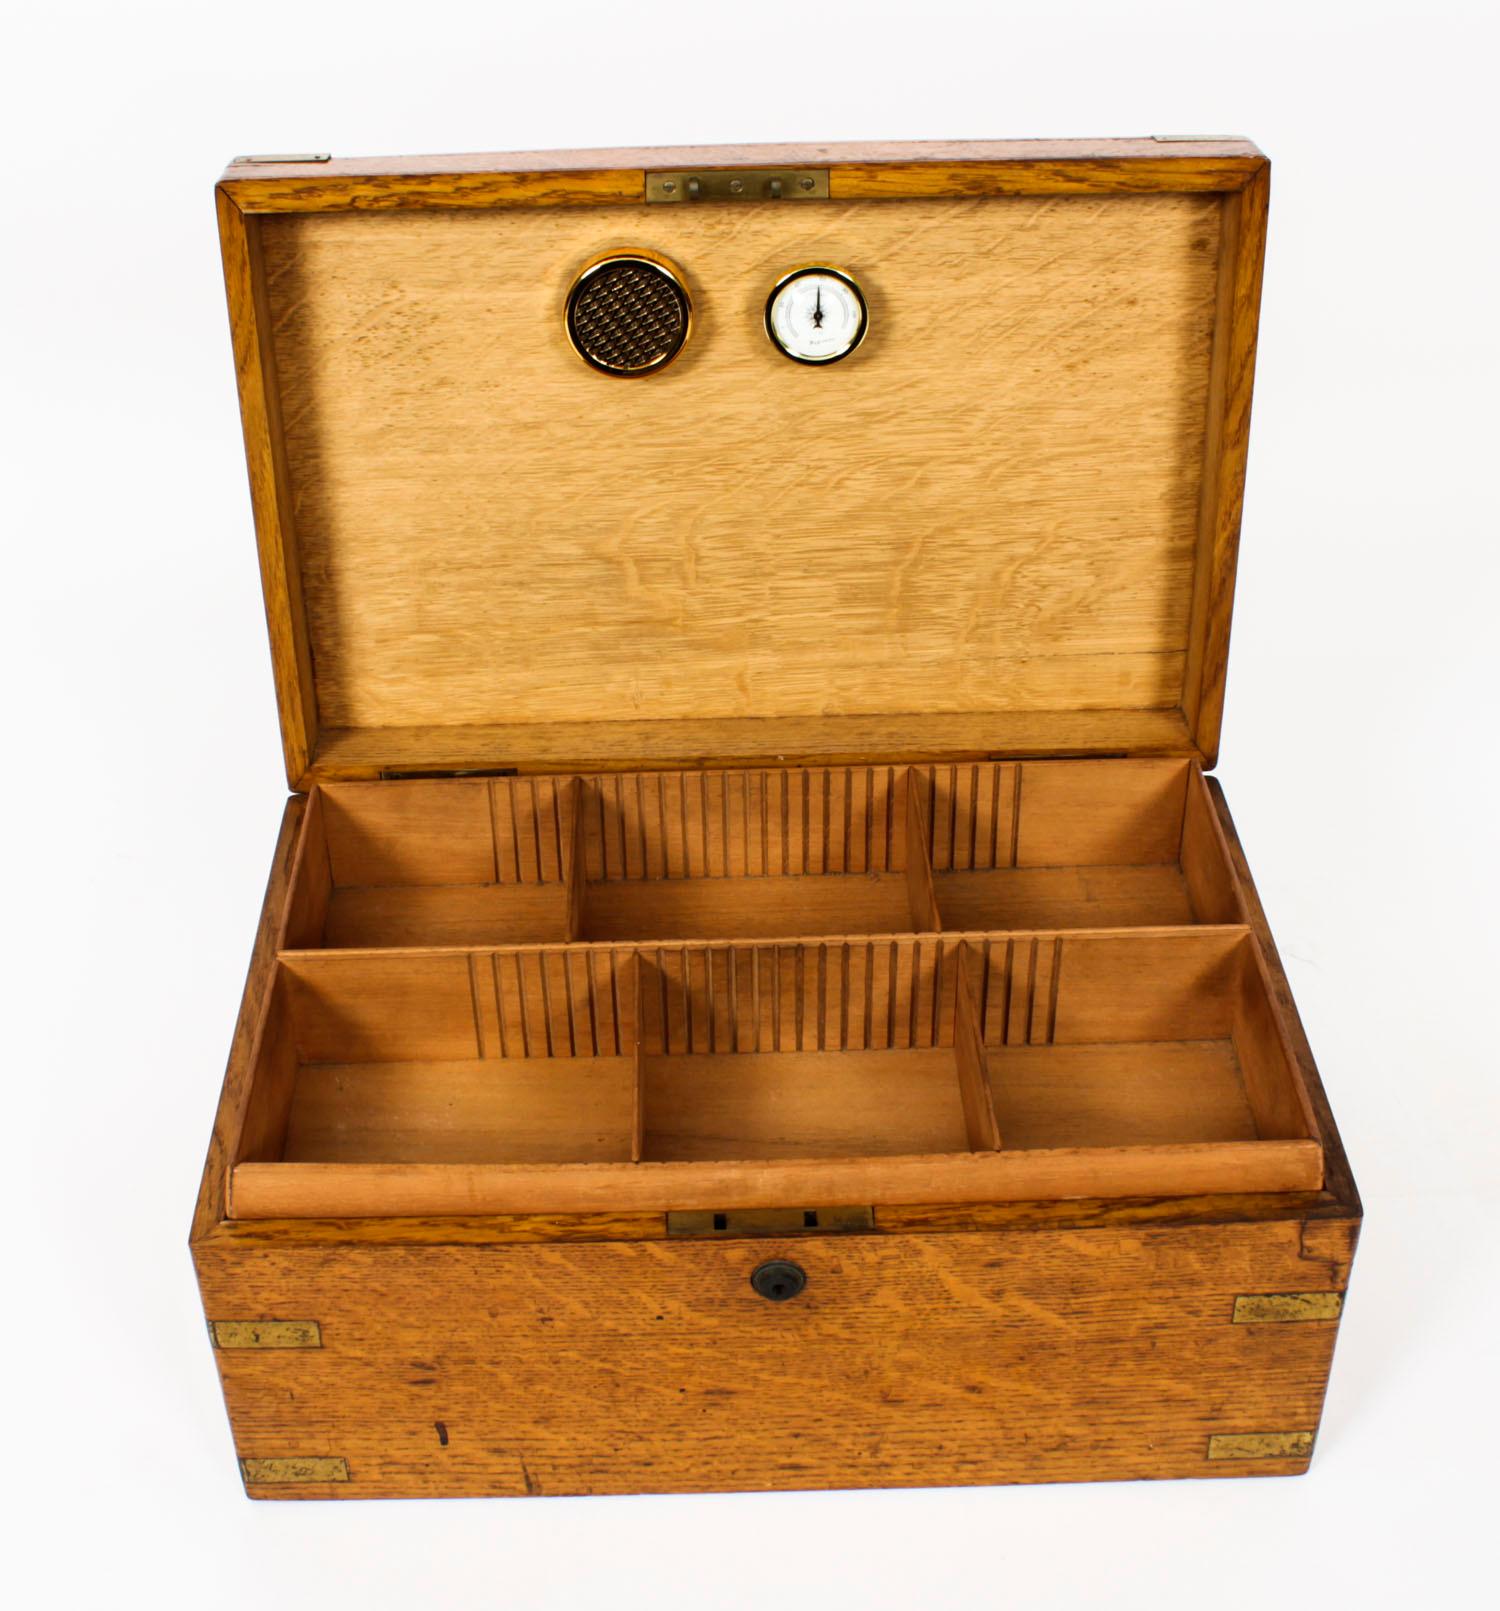 Dies ist eine stilvolle antike viktorianische Eiche Messing und Zedernholz ausgekleidet Tischplatte Zigarrenhumidor circa 1860 in Datum.

Das rechteckige Kästchen verfügt über ein herausnehmbares Tablett und verstellbare Unterteilungen mit